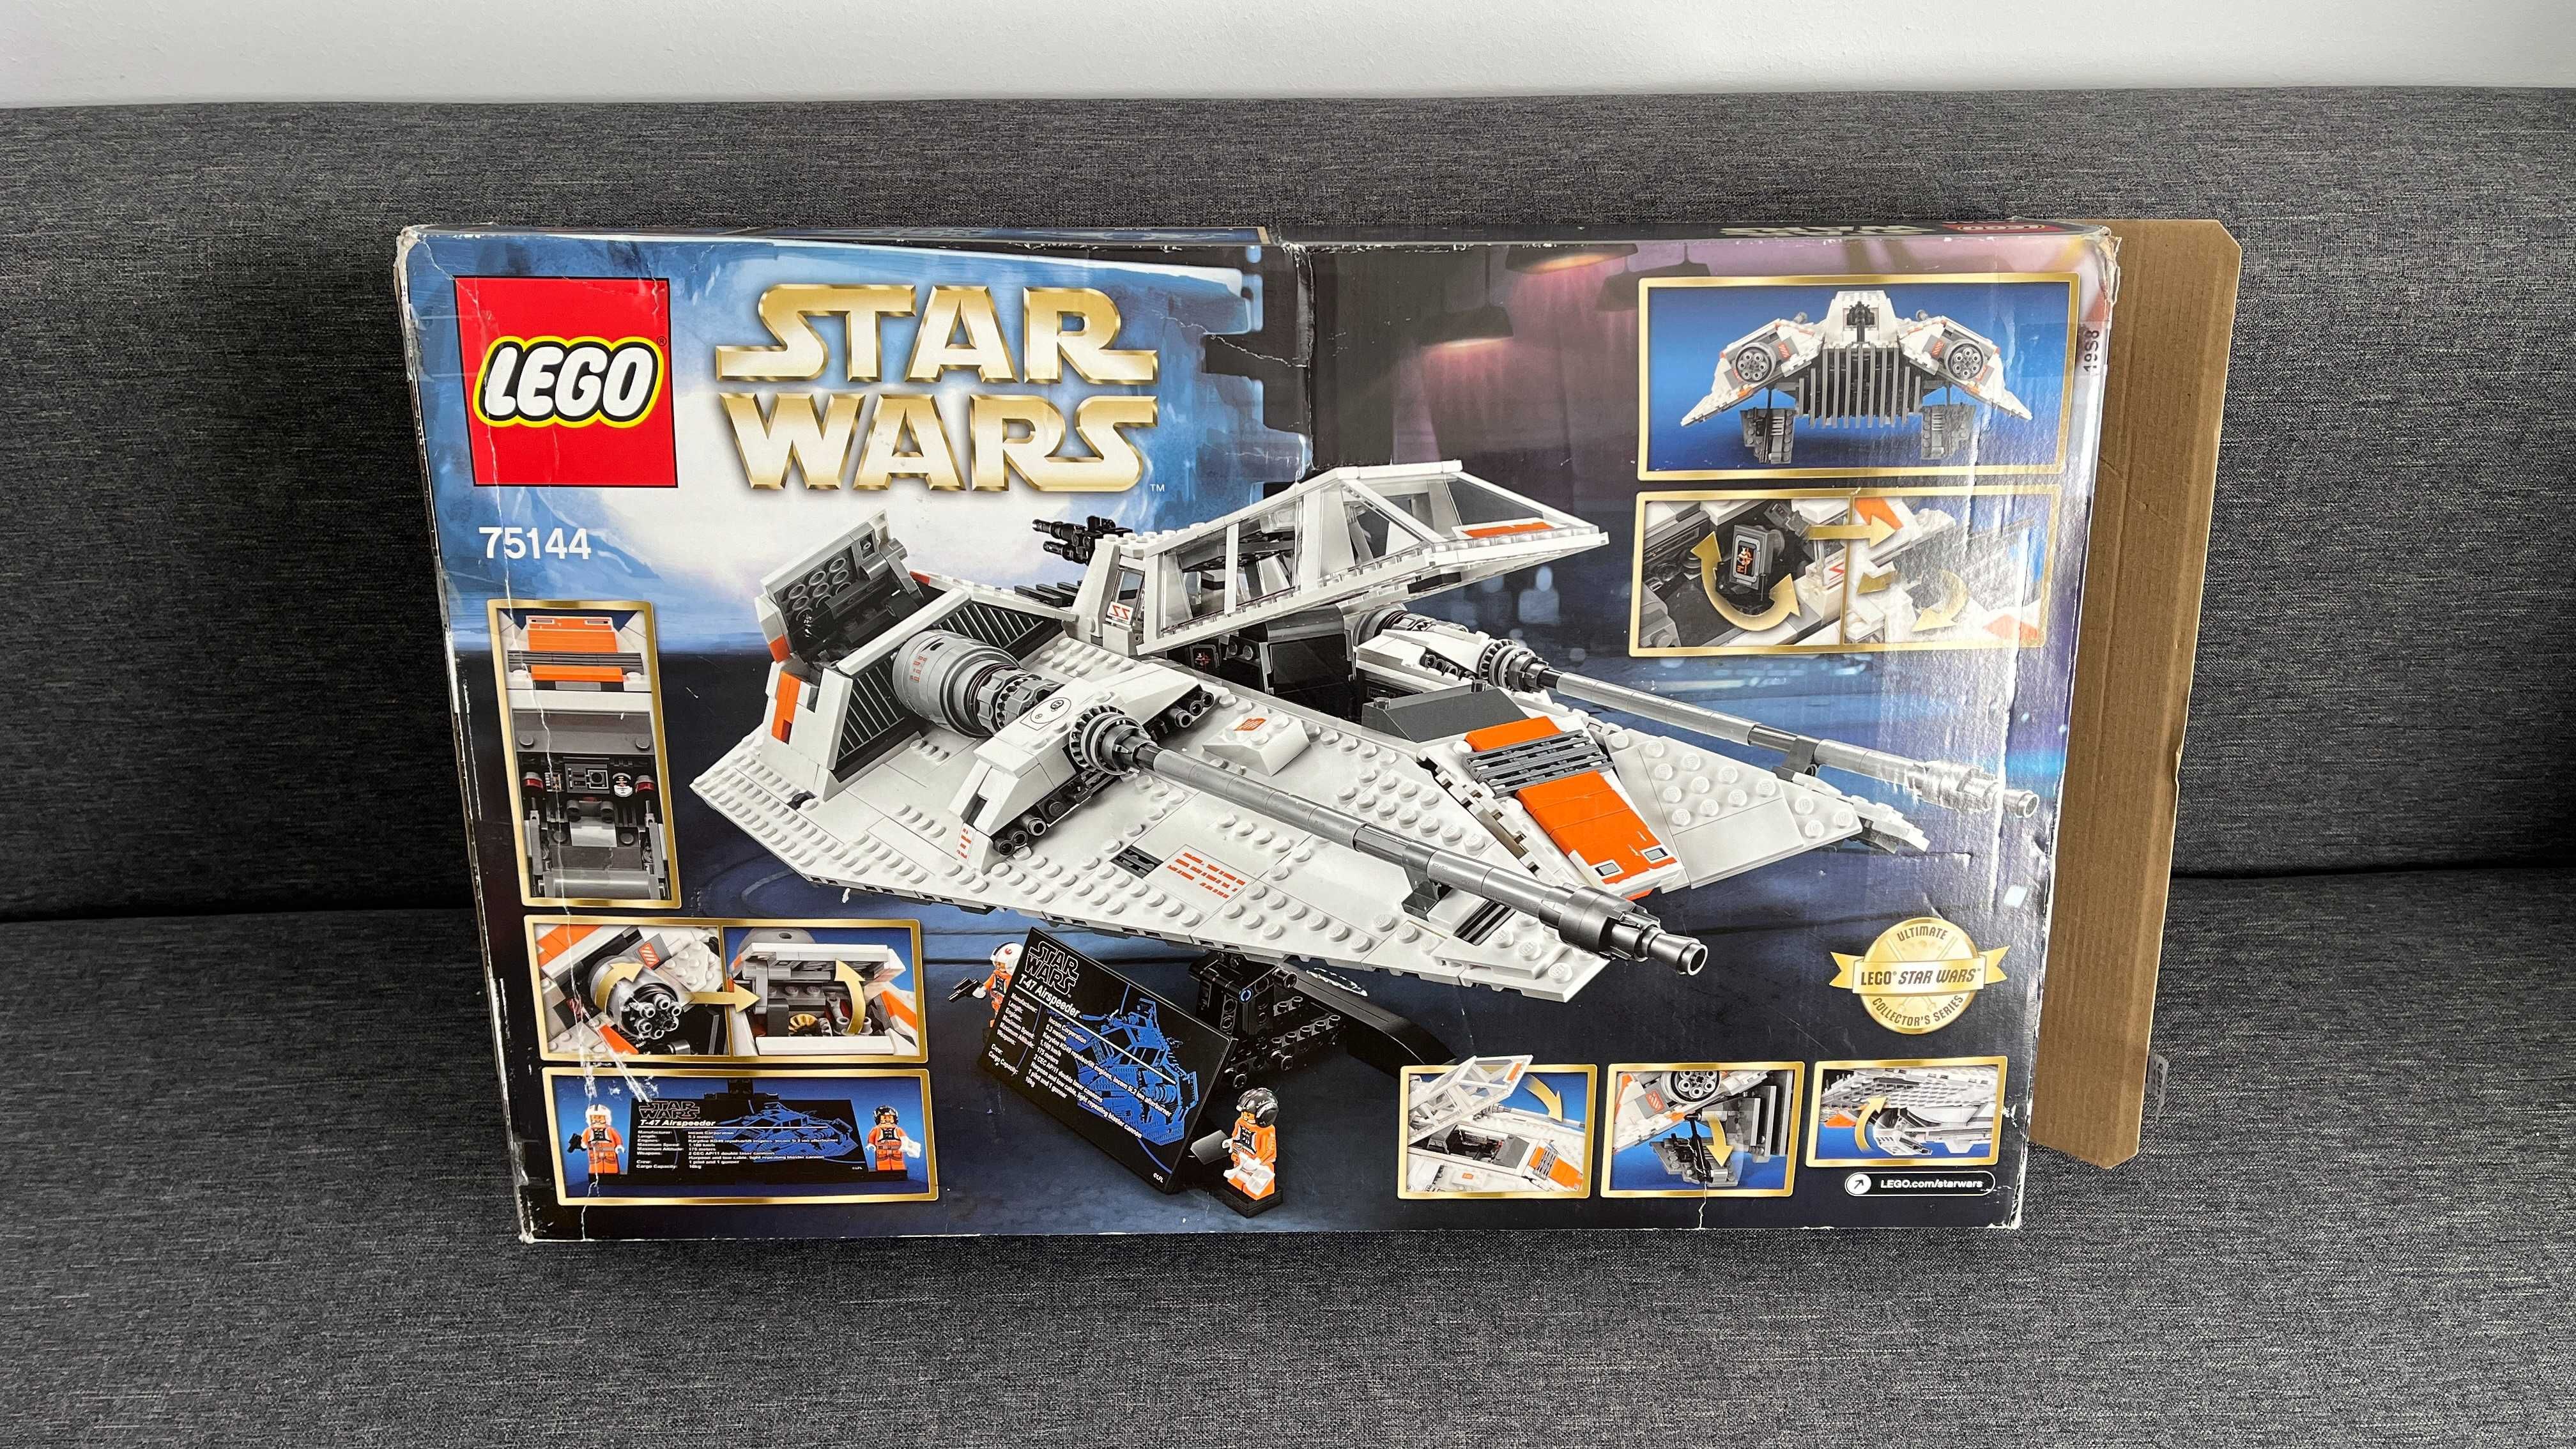 Lego Star Wars - 75144 - Snowspeeder - UCS 2nd Edition - an 2017